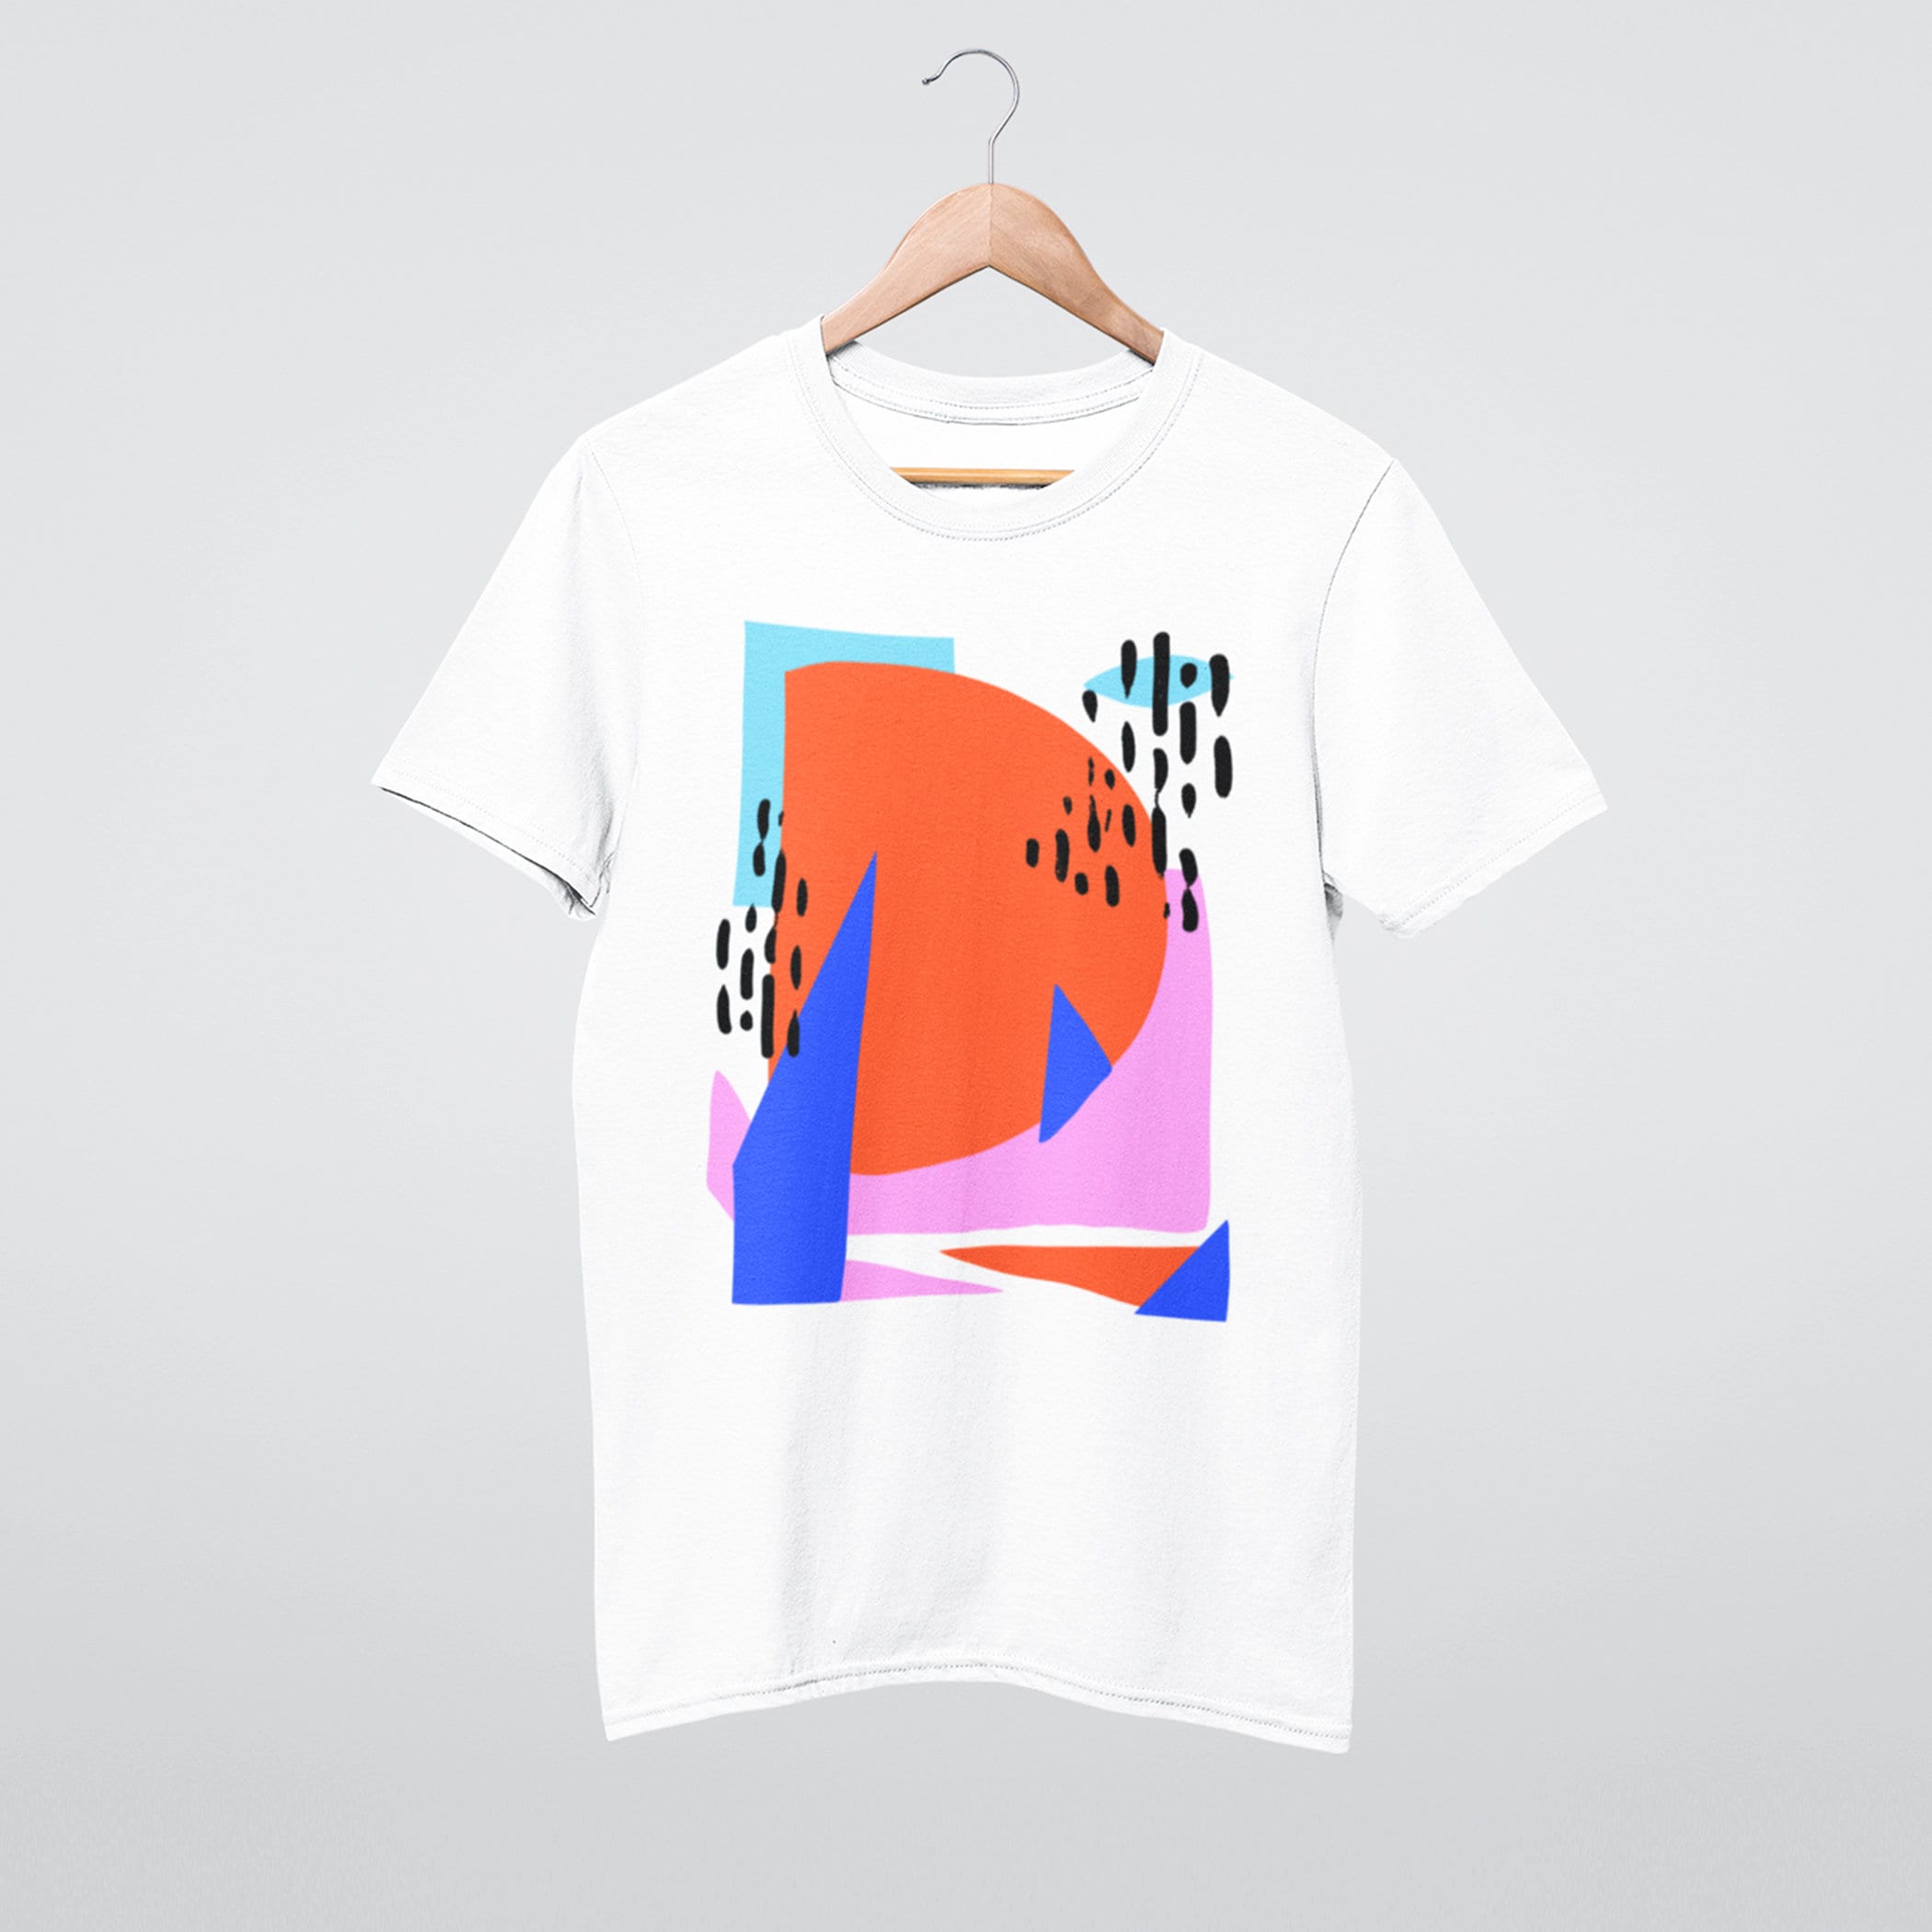 Shirt Art Cotton Unisex Tshirt, Summer Tshirt, Etsy Tshirt, Drawing - Abstract Colorful Tshirt, Graphic Art Tshirt, Geometric Tshirt, Shirt, Shirt,